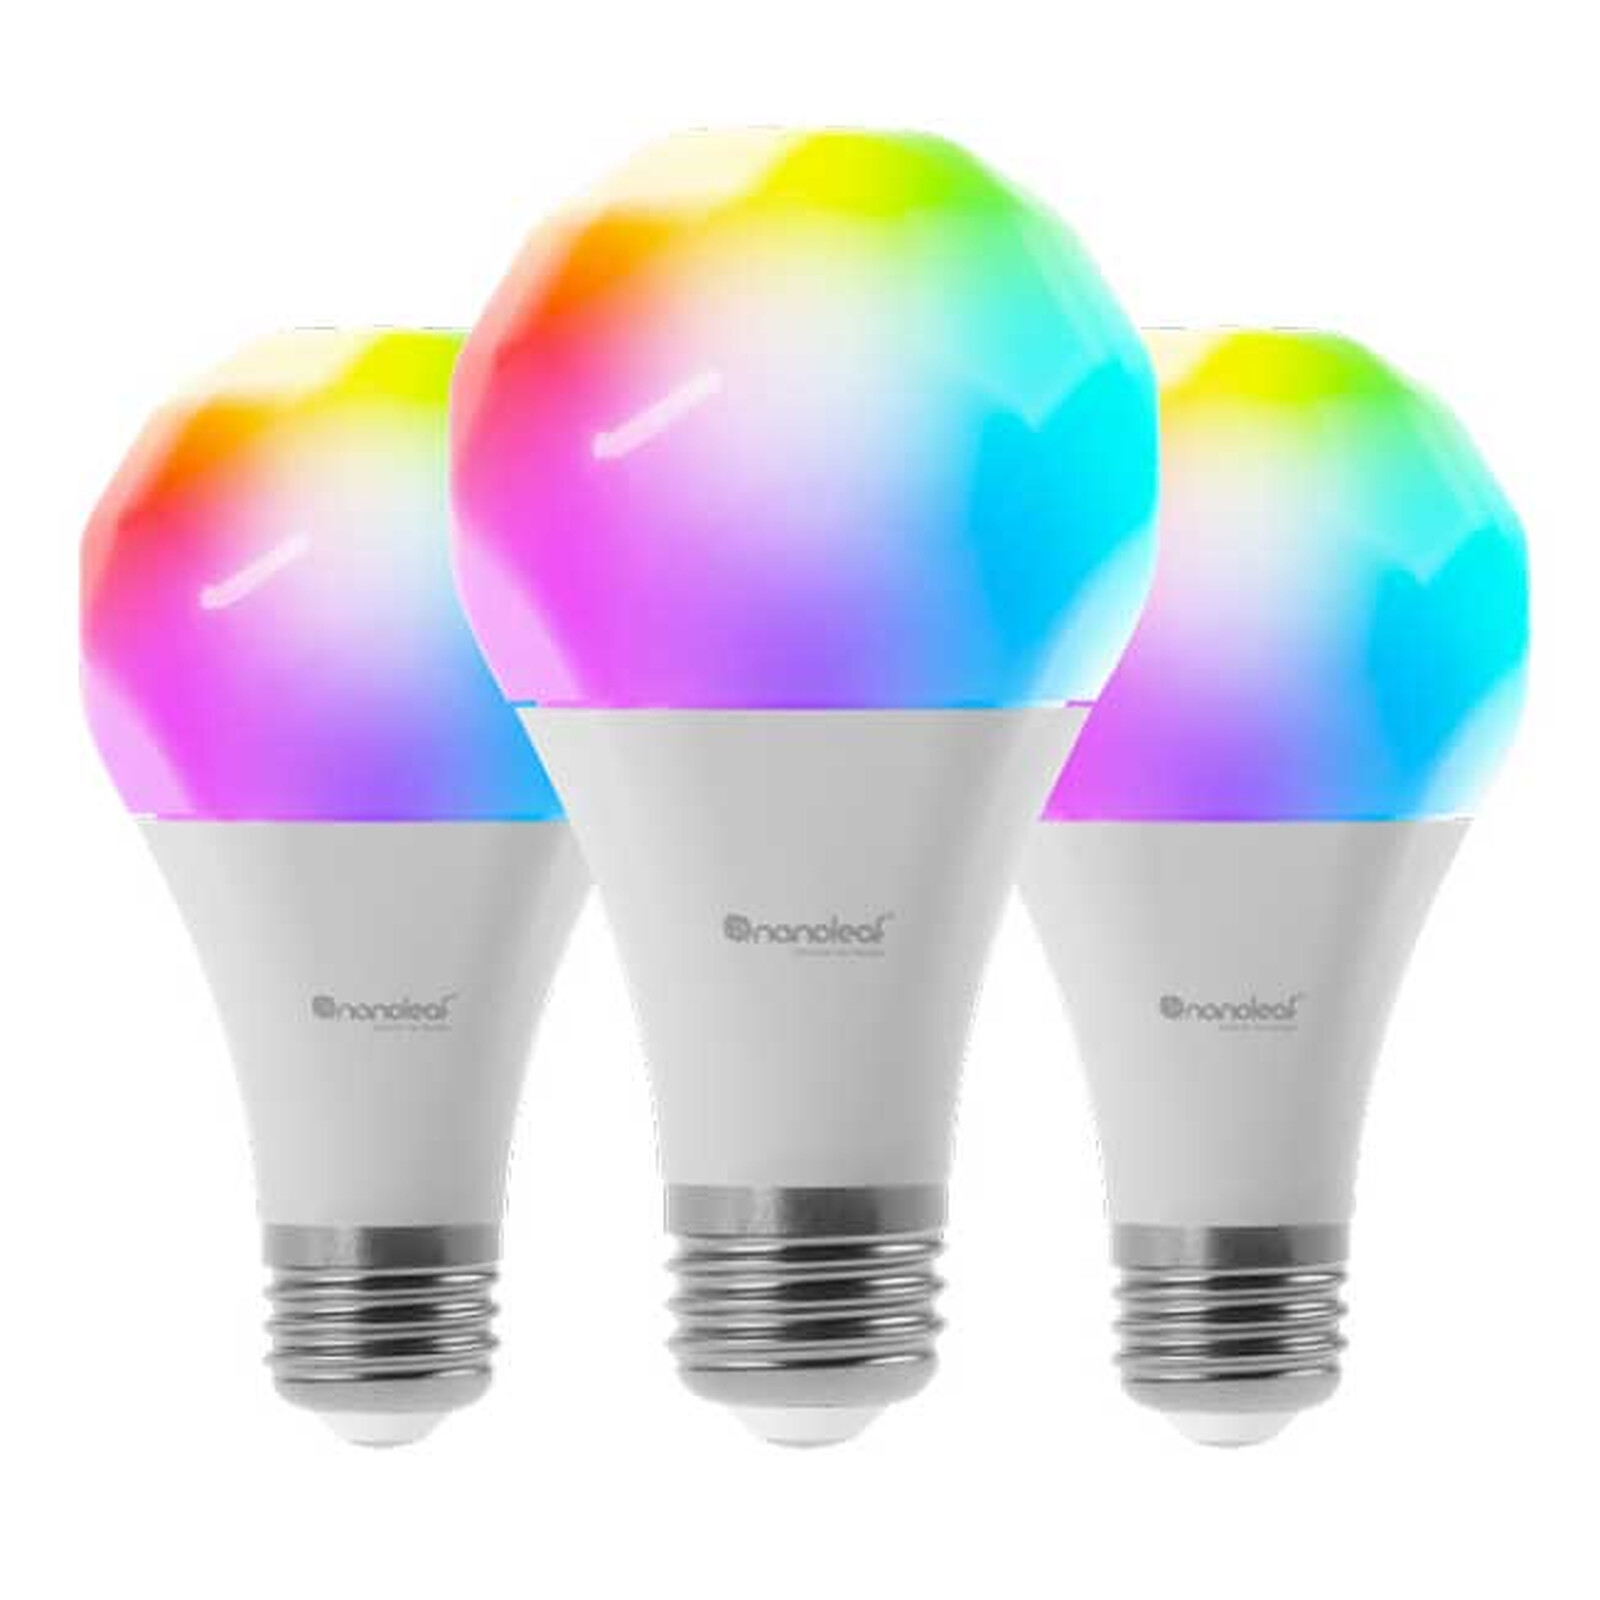 Ampoule LED connectée WIFI couleurs changeantes E14 40 W